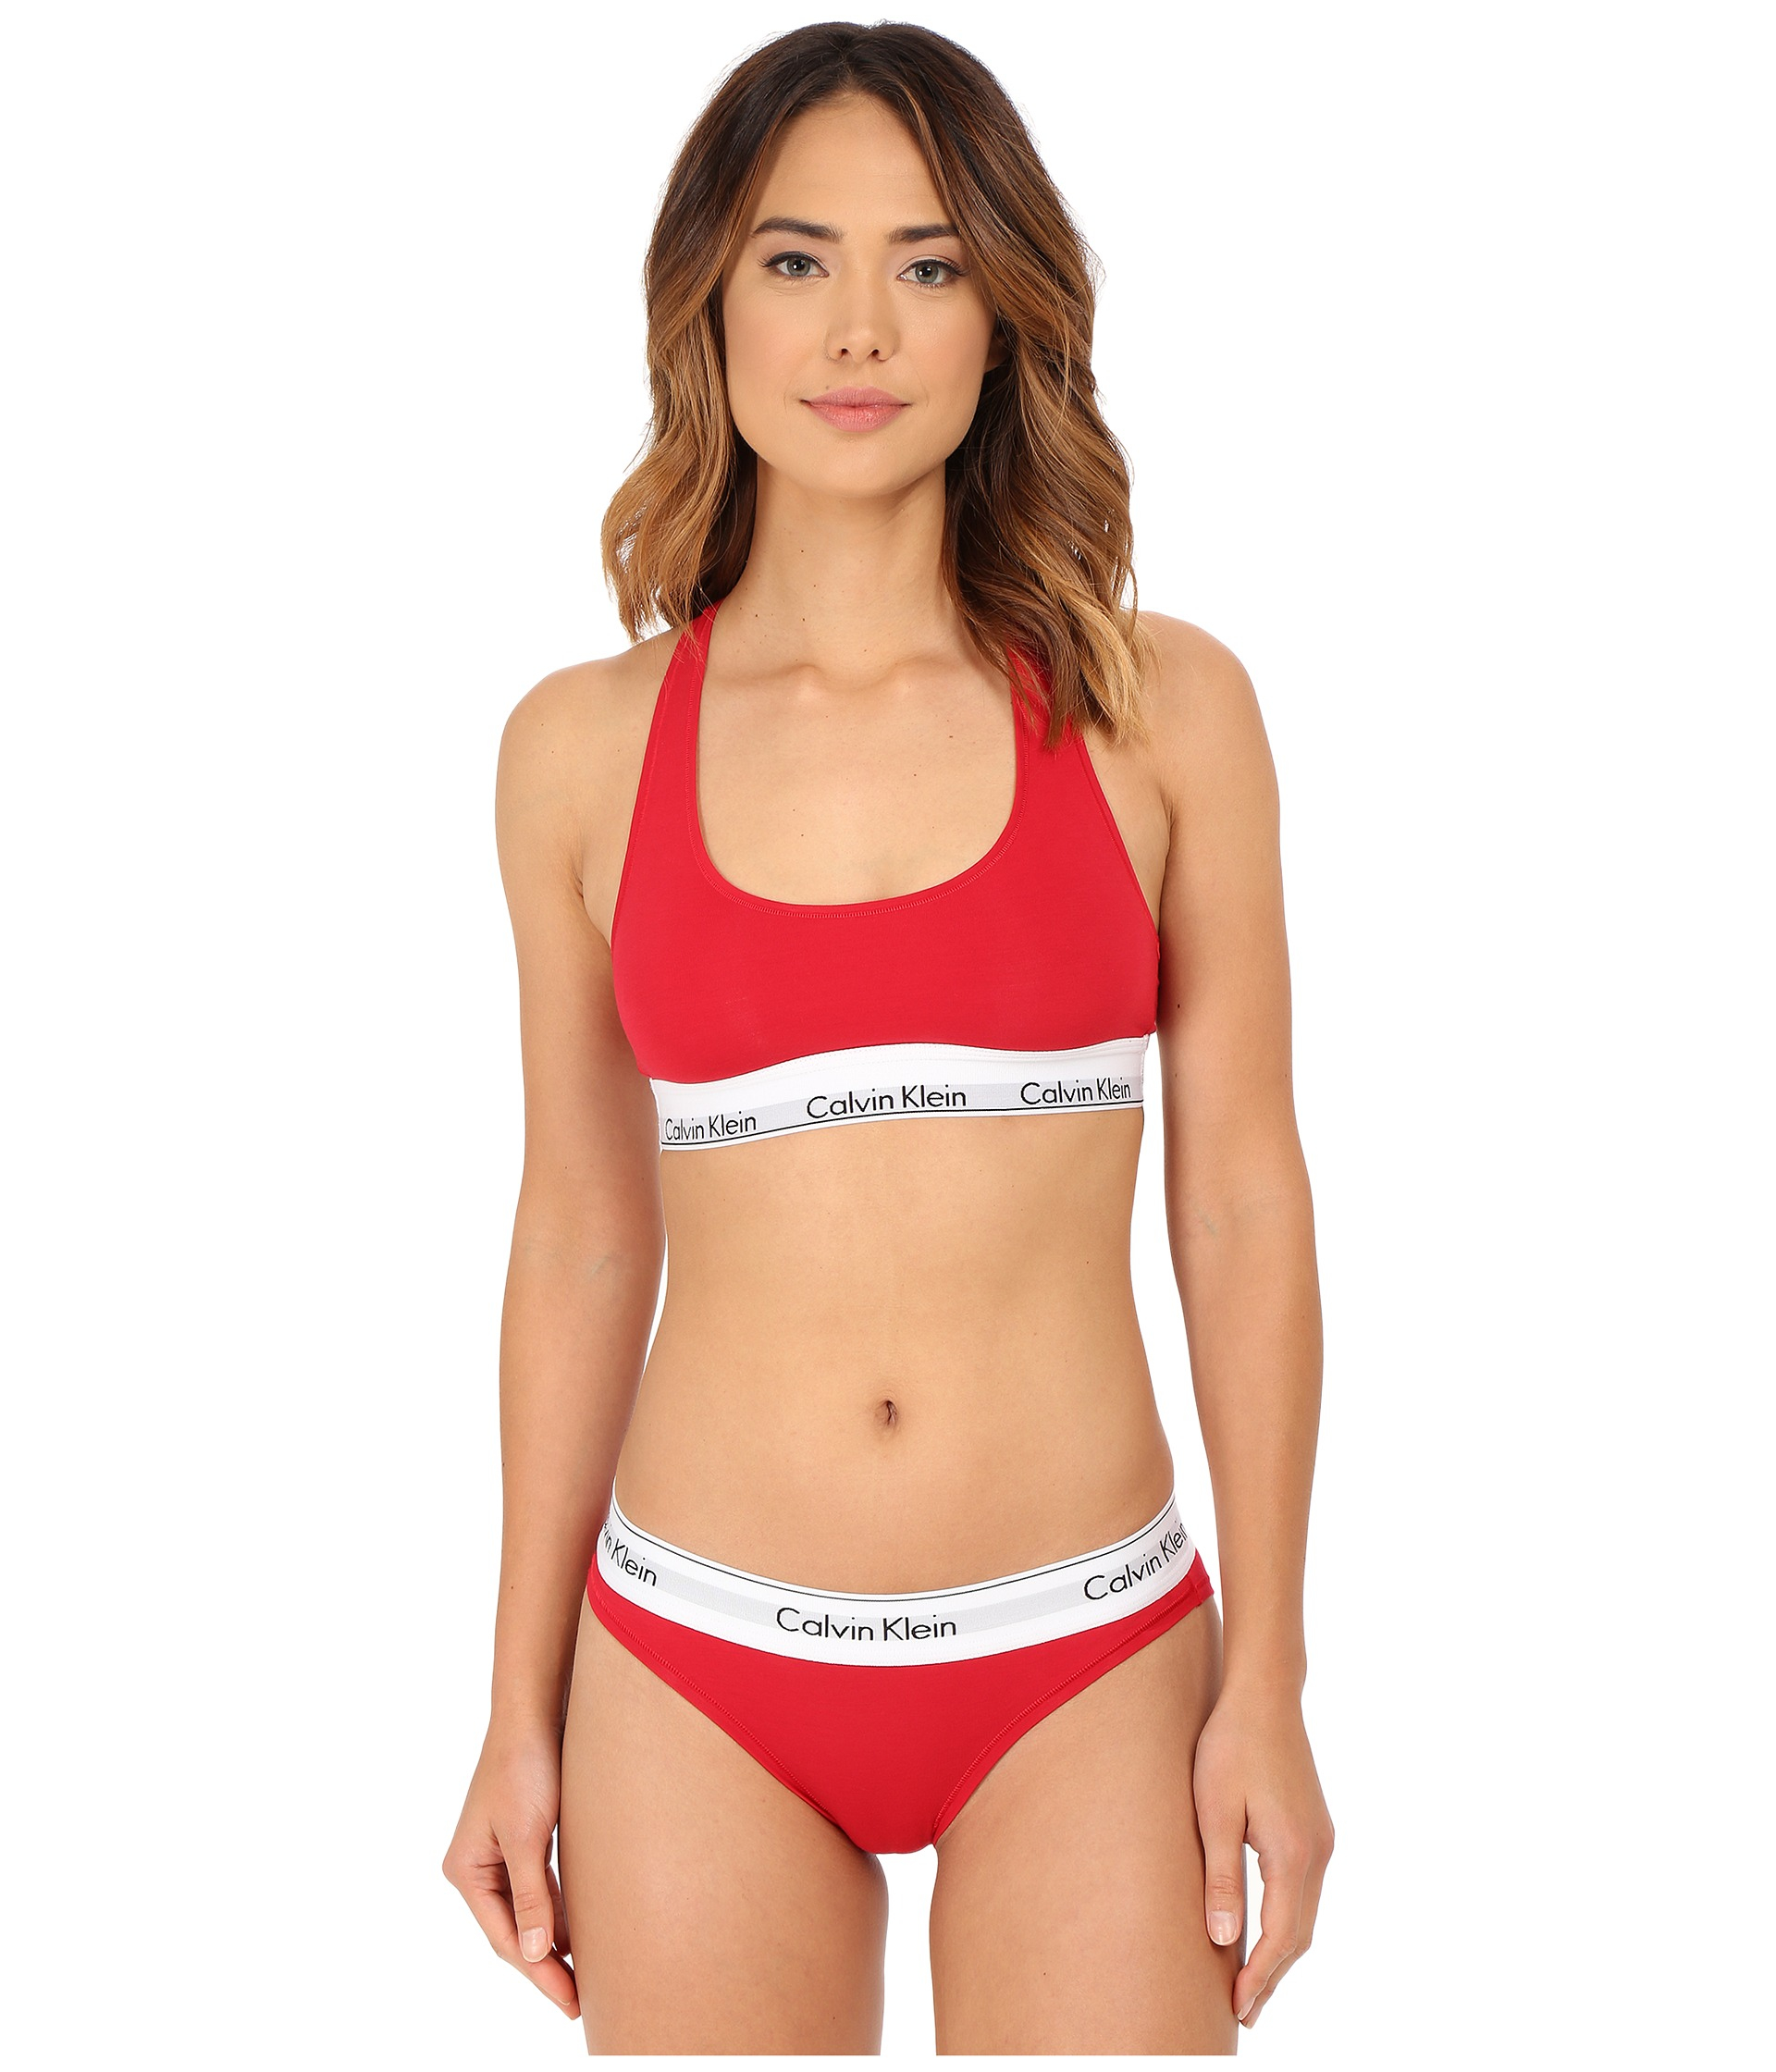 calvin klein womens underwear set red,cheap - OFF 58% 